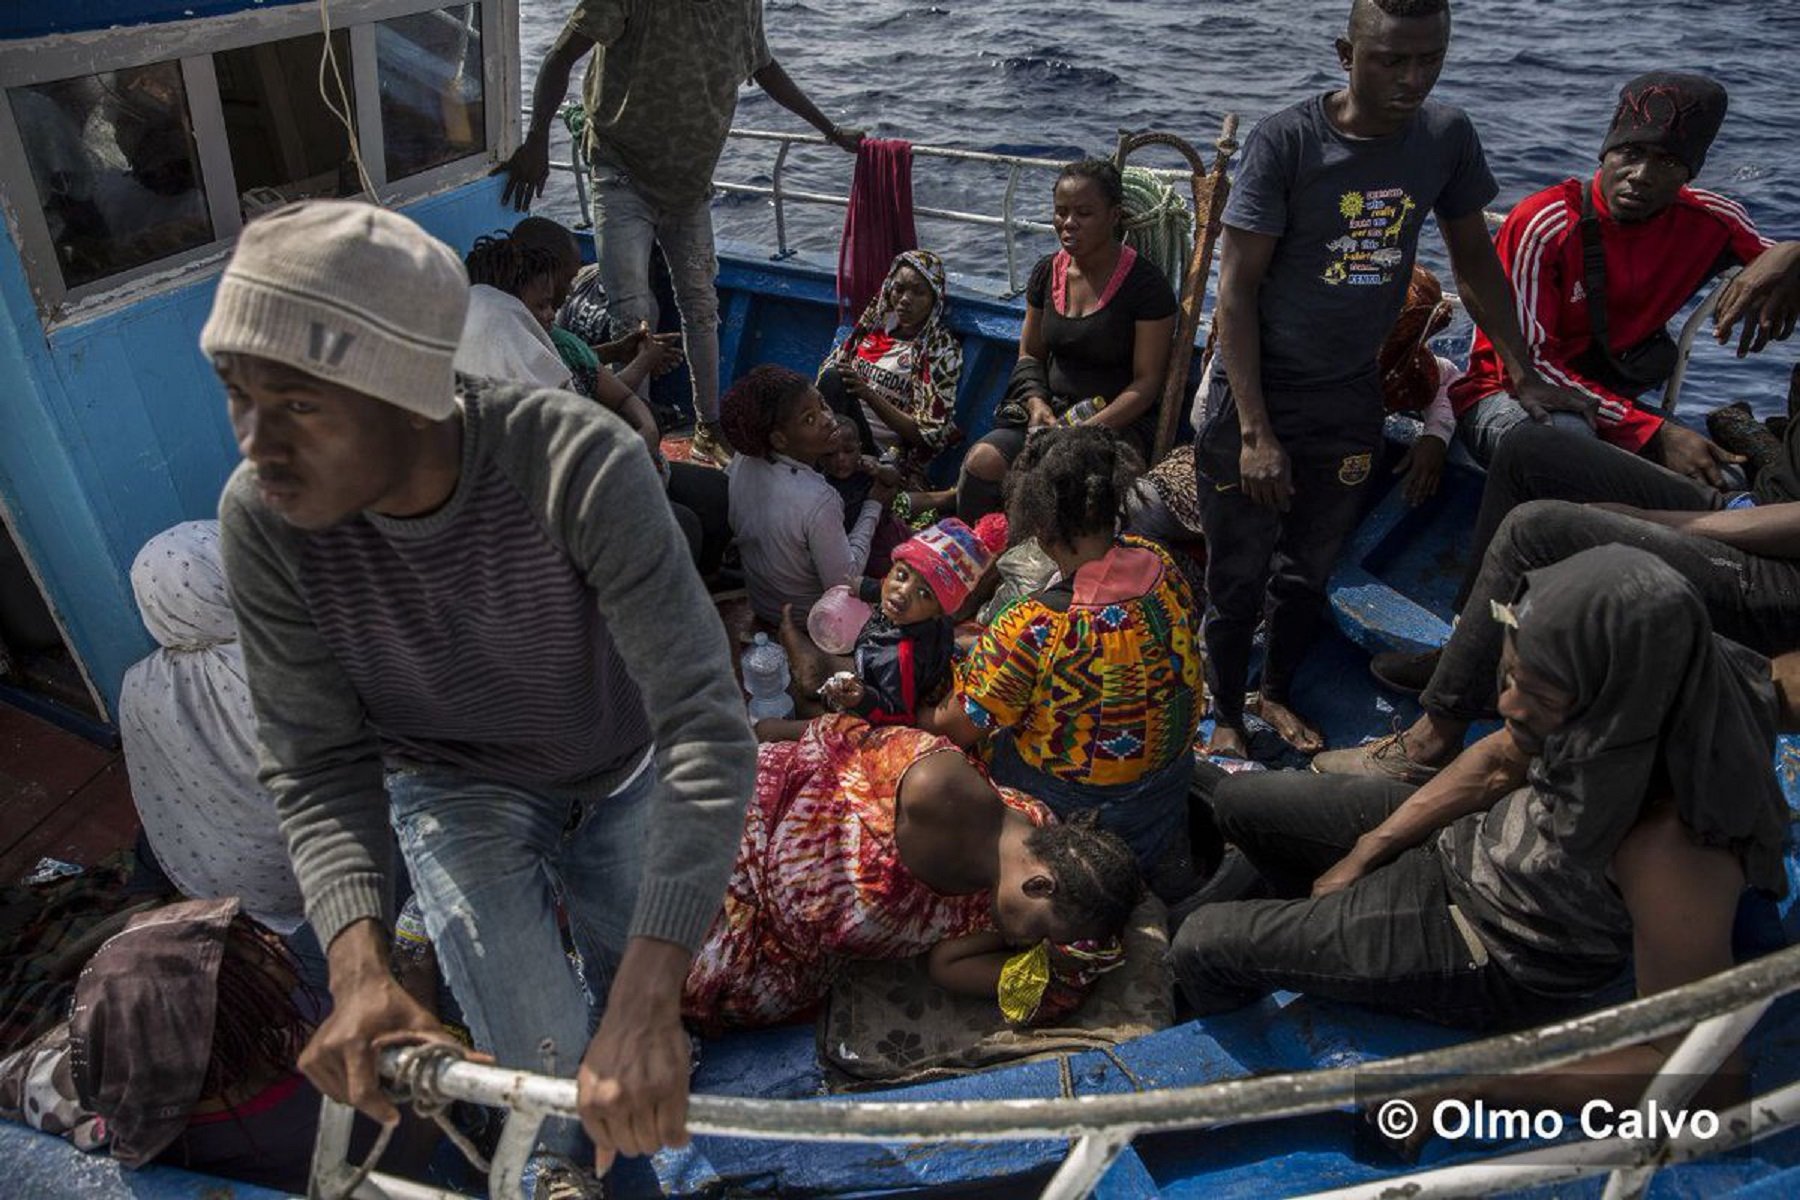 El Open Arms rescata una barca de madera con 40 personas